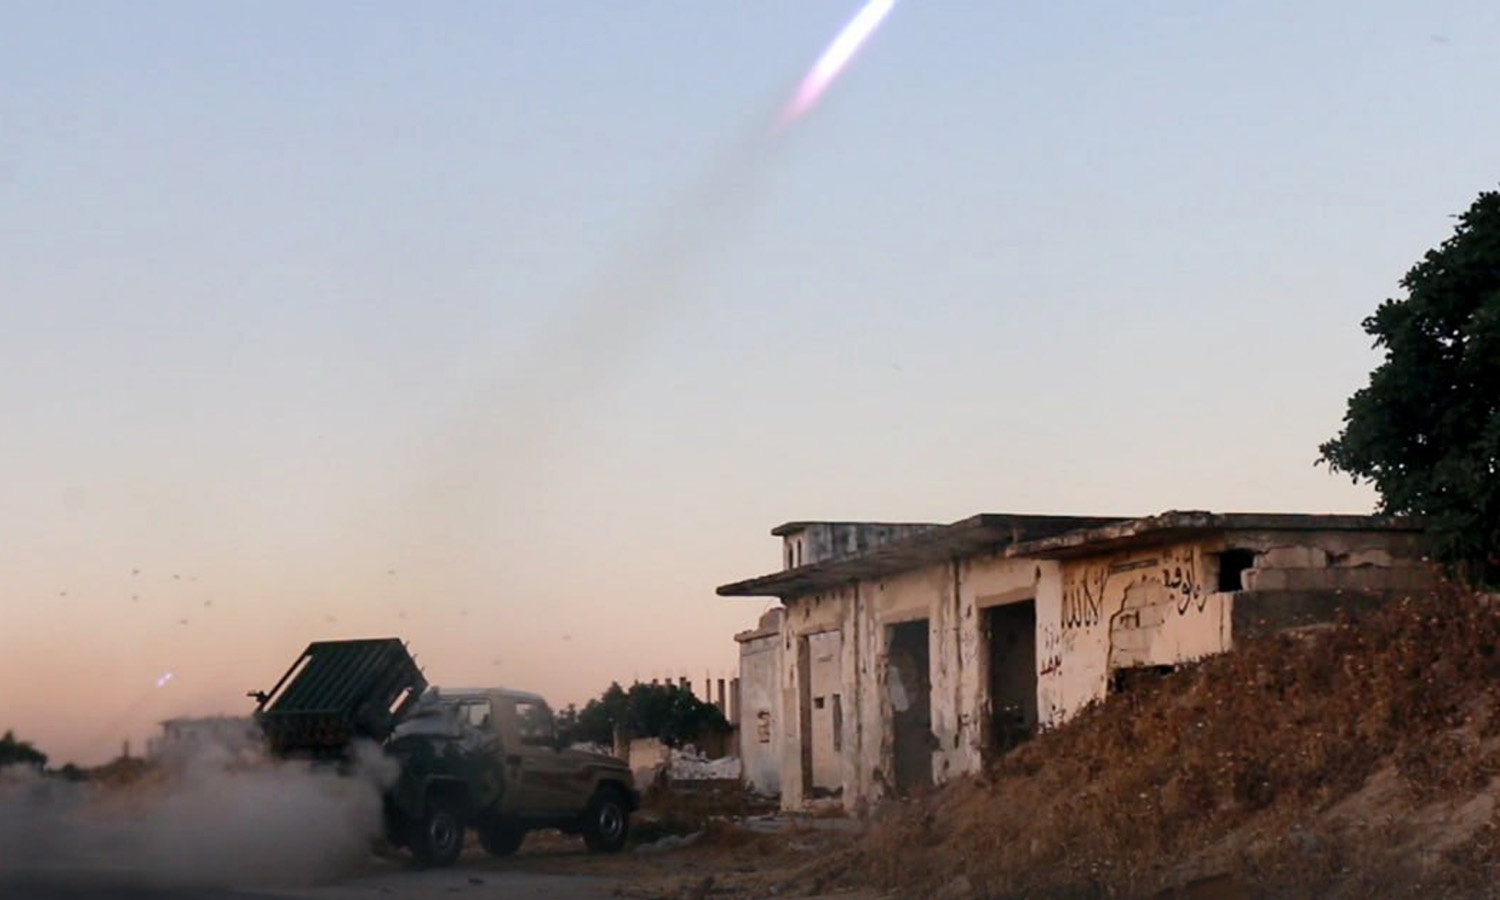 ردت فصائل المعارضة المسلحة على القصف الروسي باستهداف مواقع قوات النظام السوري بريف حماة الشمالي بصواريخ كاتيوشا- 26 جزيران 2023 (أمجاد)